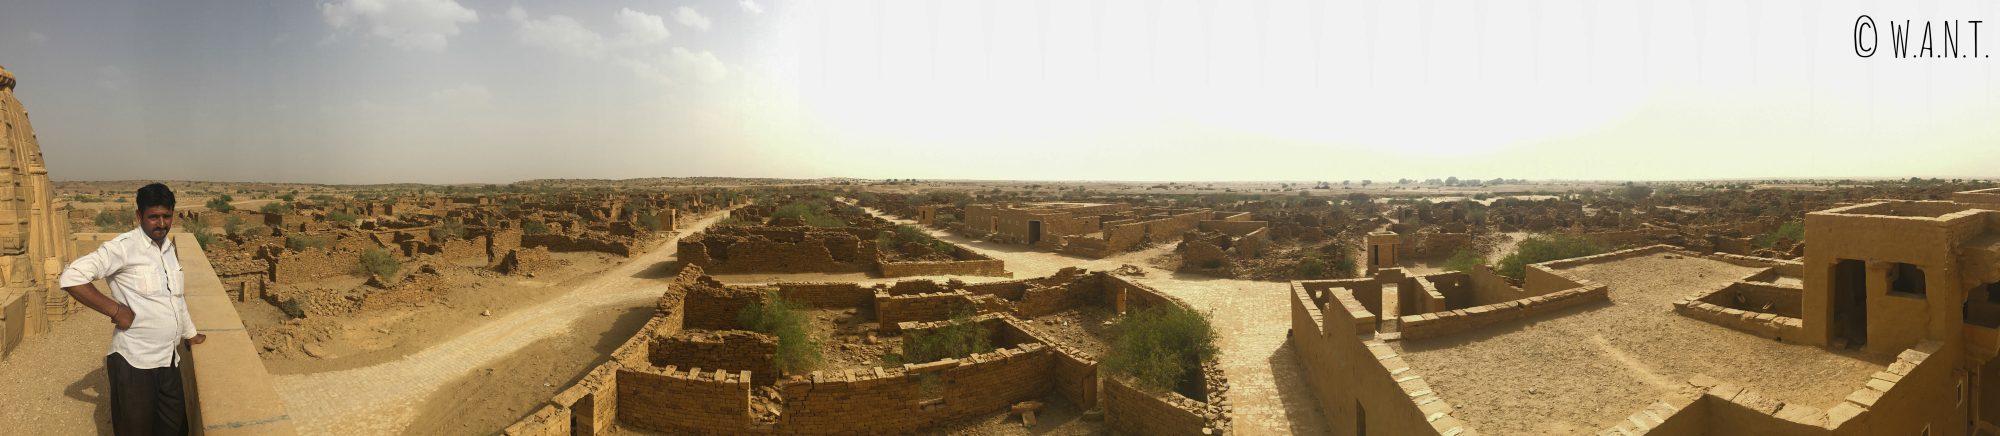 Panorama du Village vide de Kuldhara